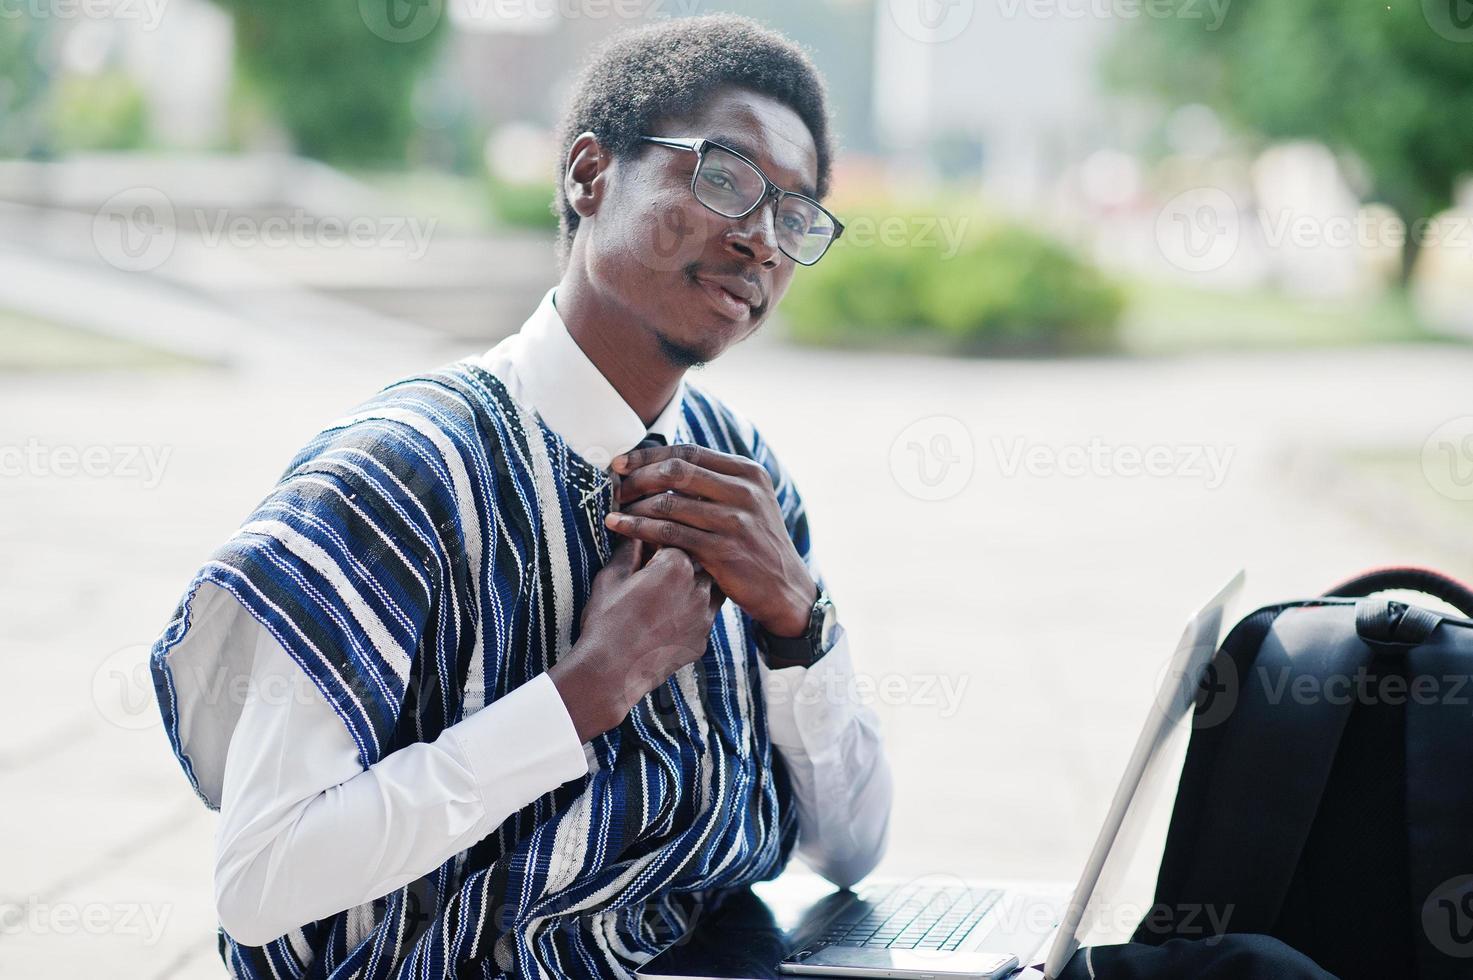 estudiante africano con ropa tradicional y gafas con mochila, trabajando en una laptop al aire libre. foto